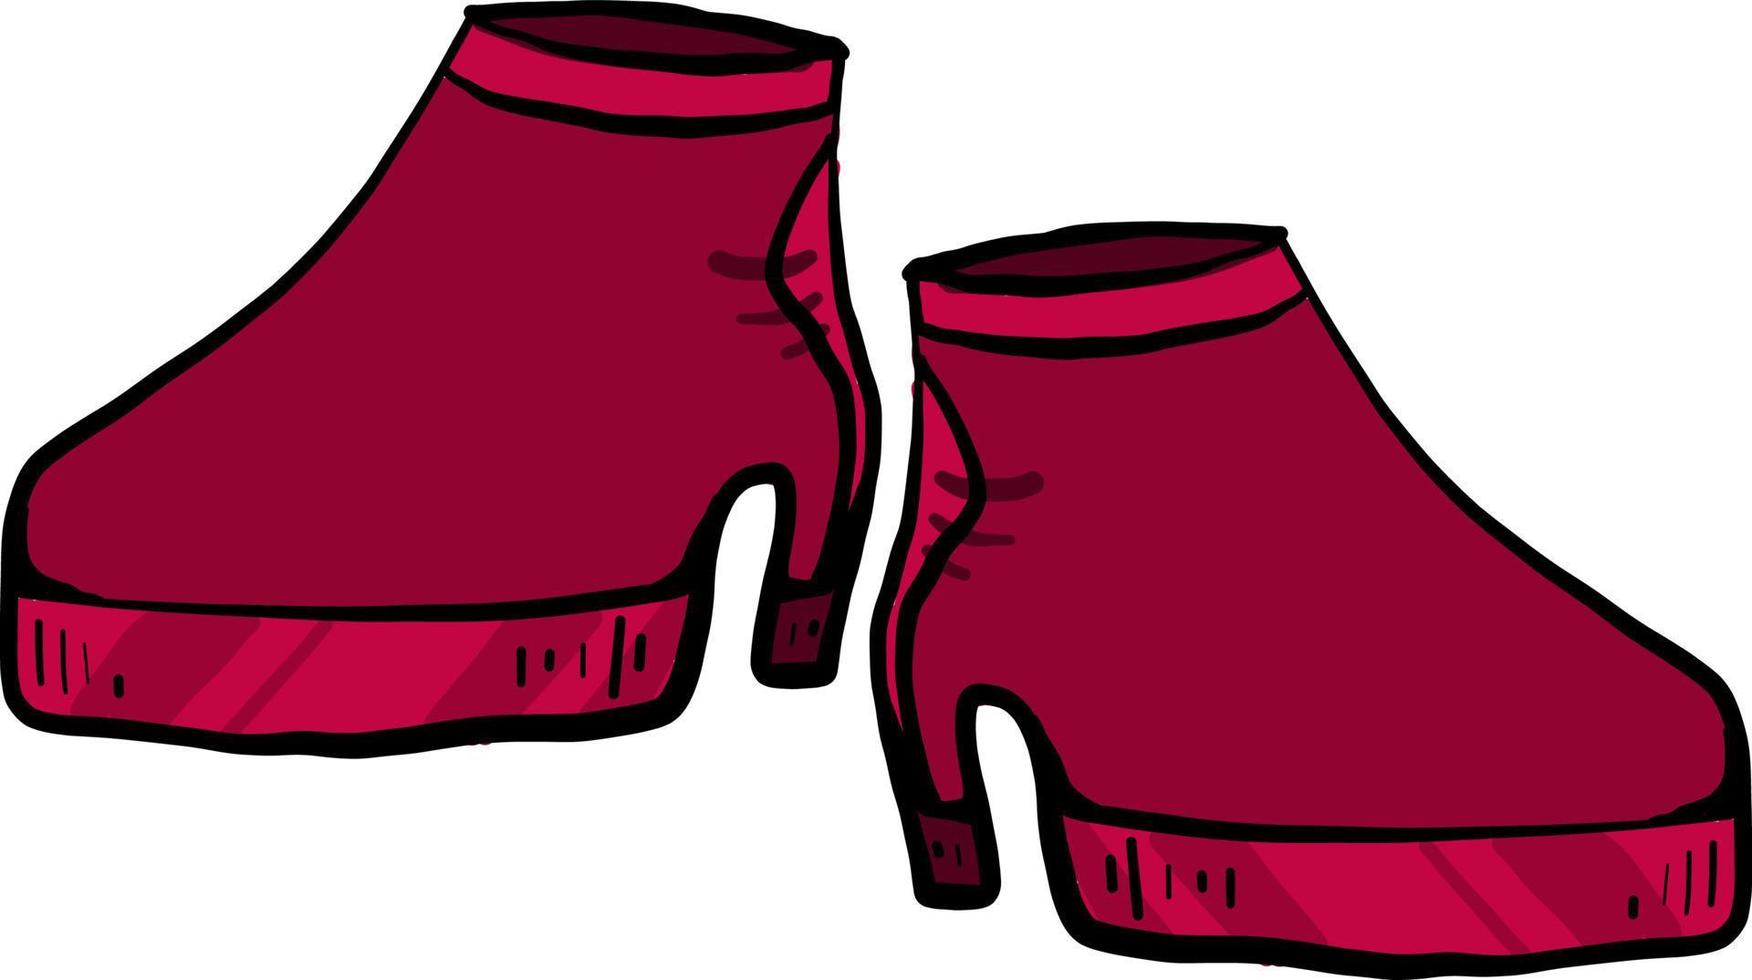 Zapatos de mujer rojo, ilustración, vector sobre fondo blanco.